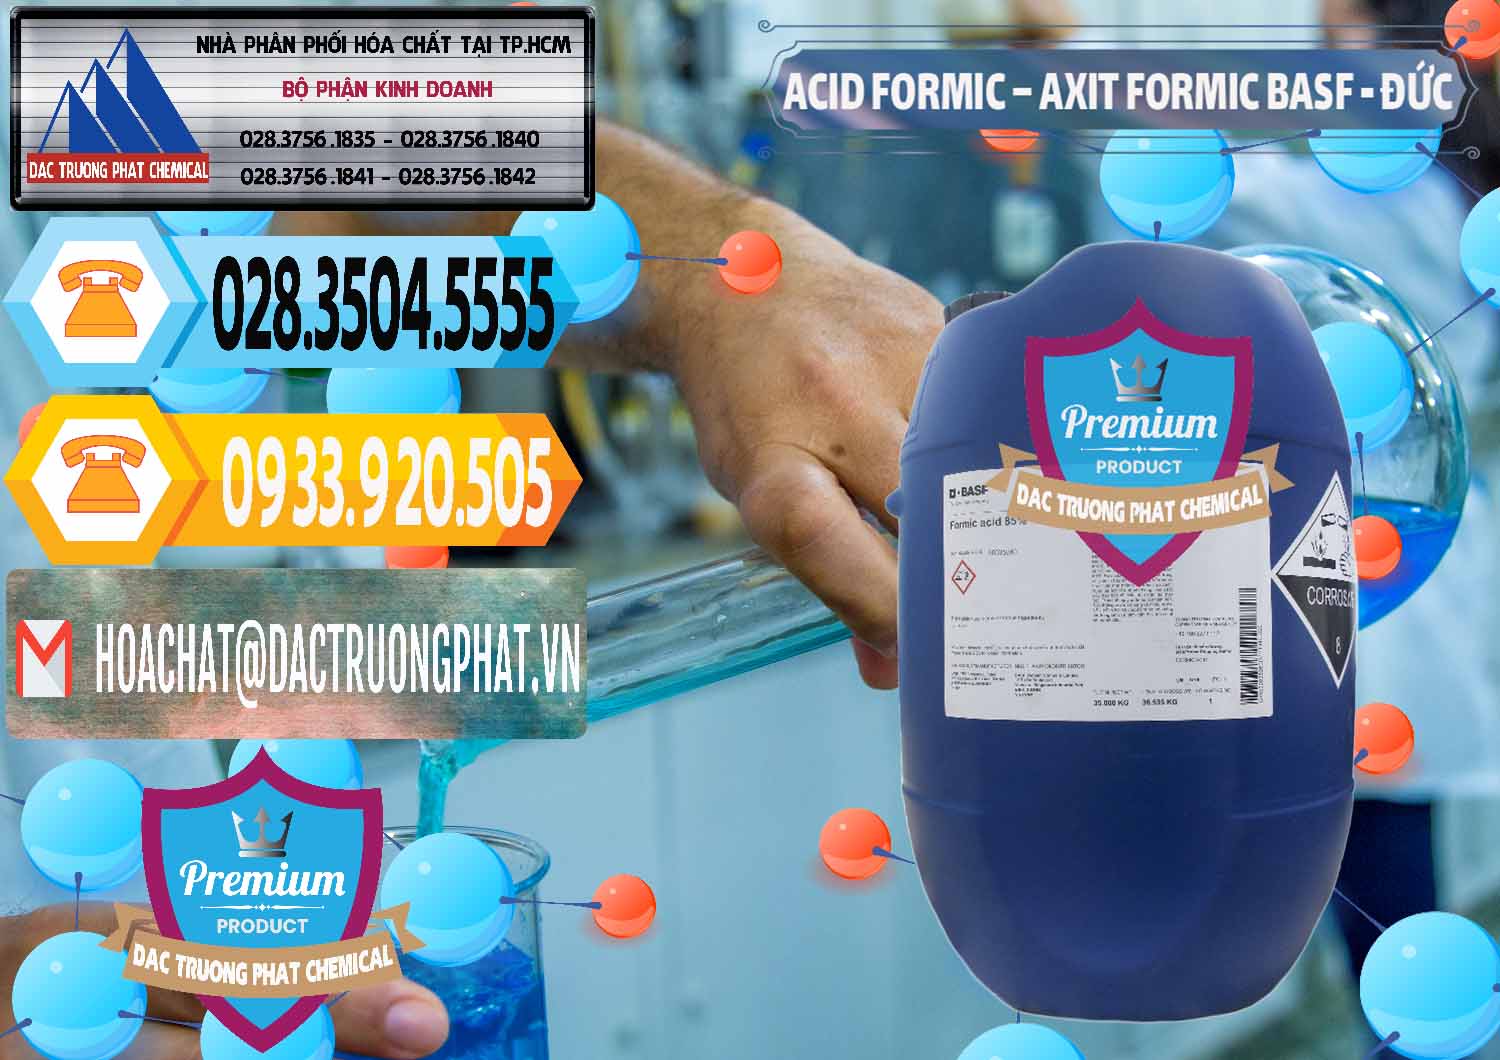 Nơi chuyên kinh doanh và bán Acid Formic - Axit Formic BASF Đức Germany - 0028 - Nơi phân phối và cung cấp hóa chất tại TP.HCM - hoachattayrua.net